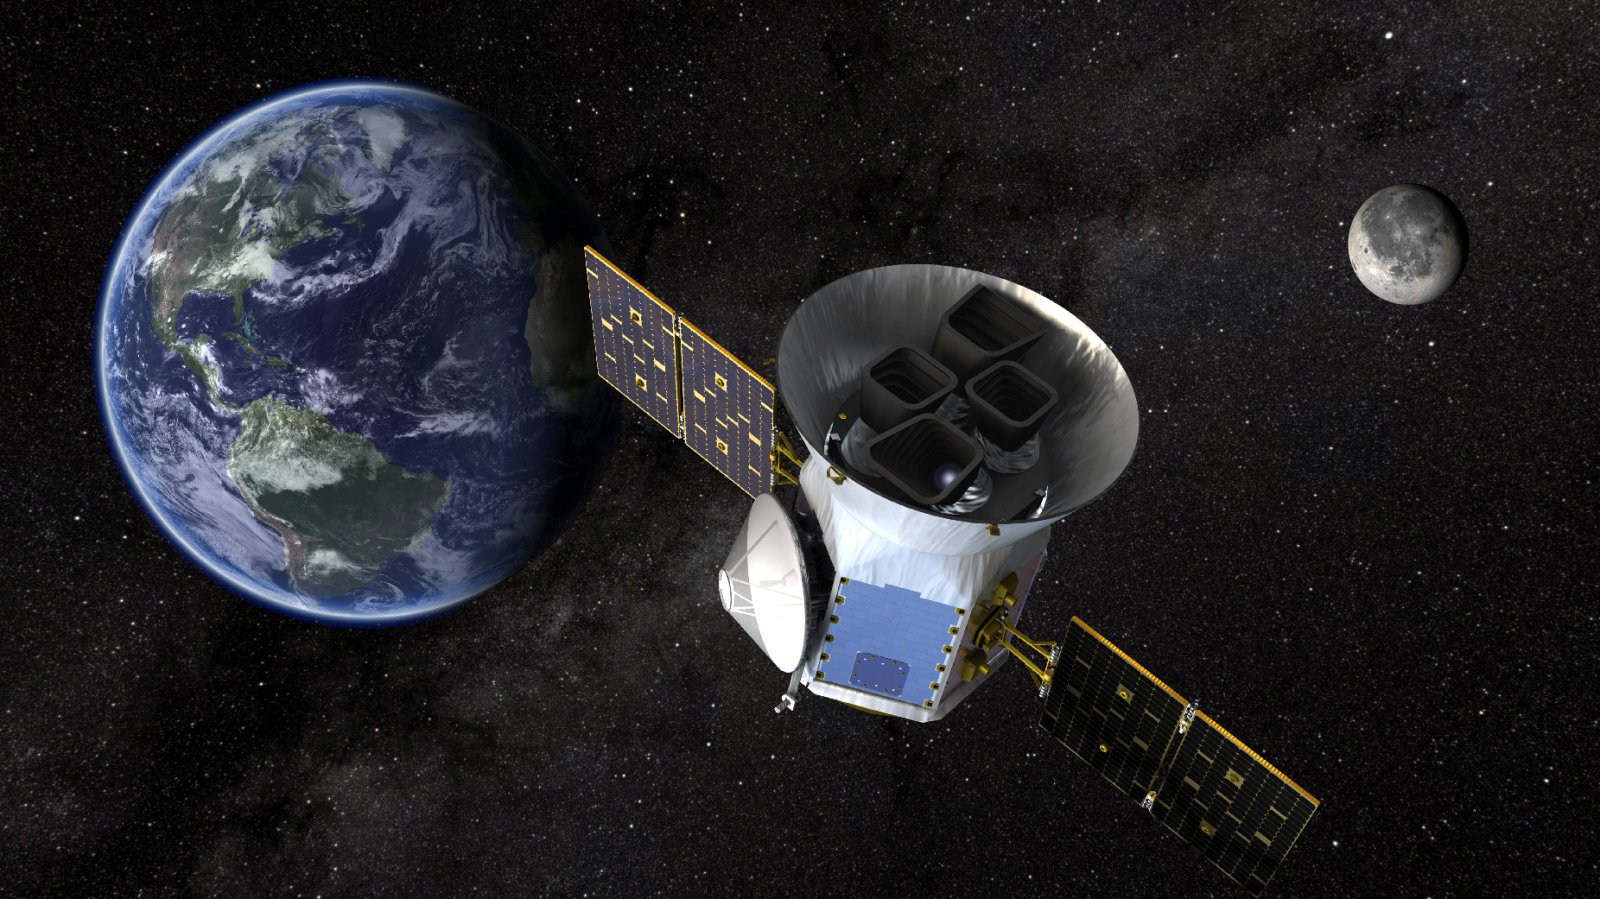 Le nouveau «chasseur de экзопланетами» de la NASA sera lancé lundi